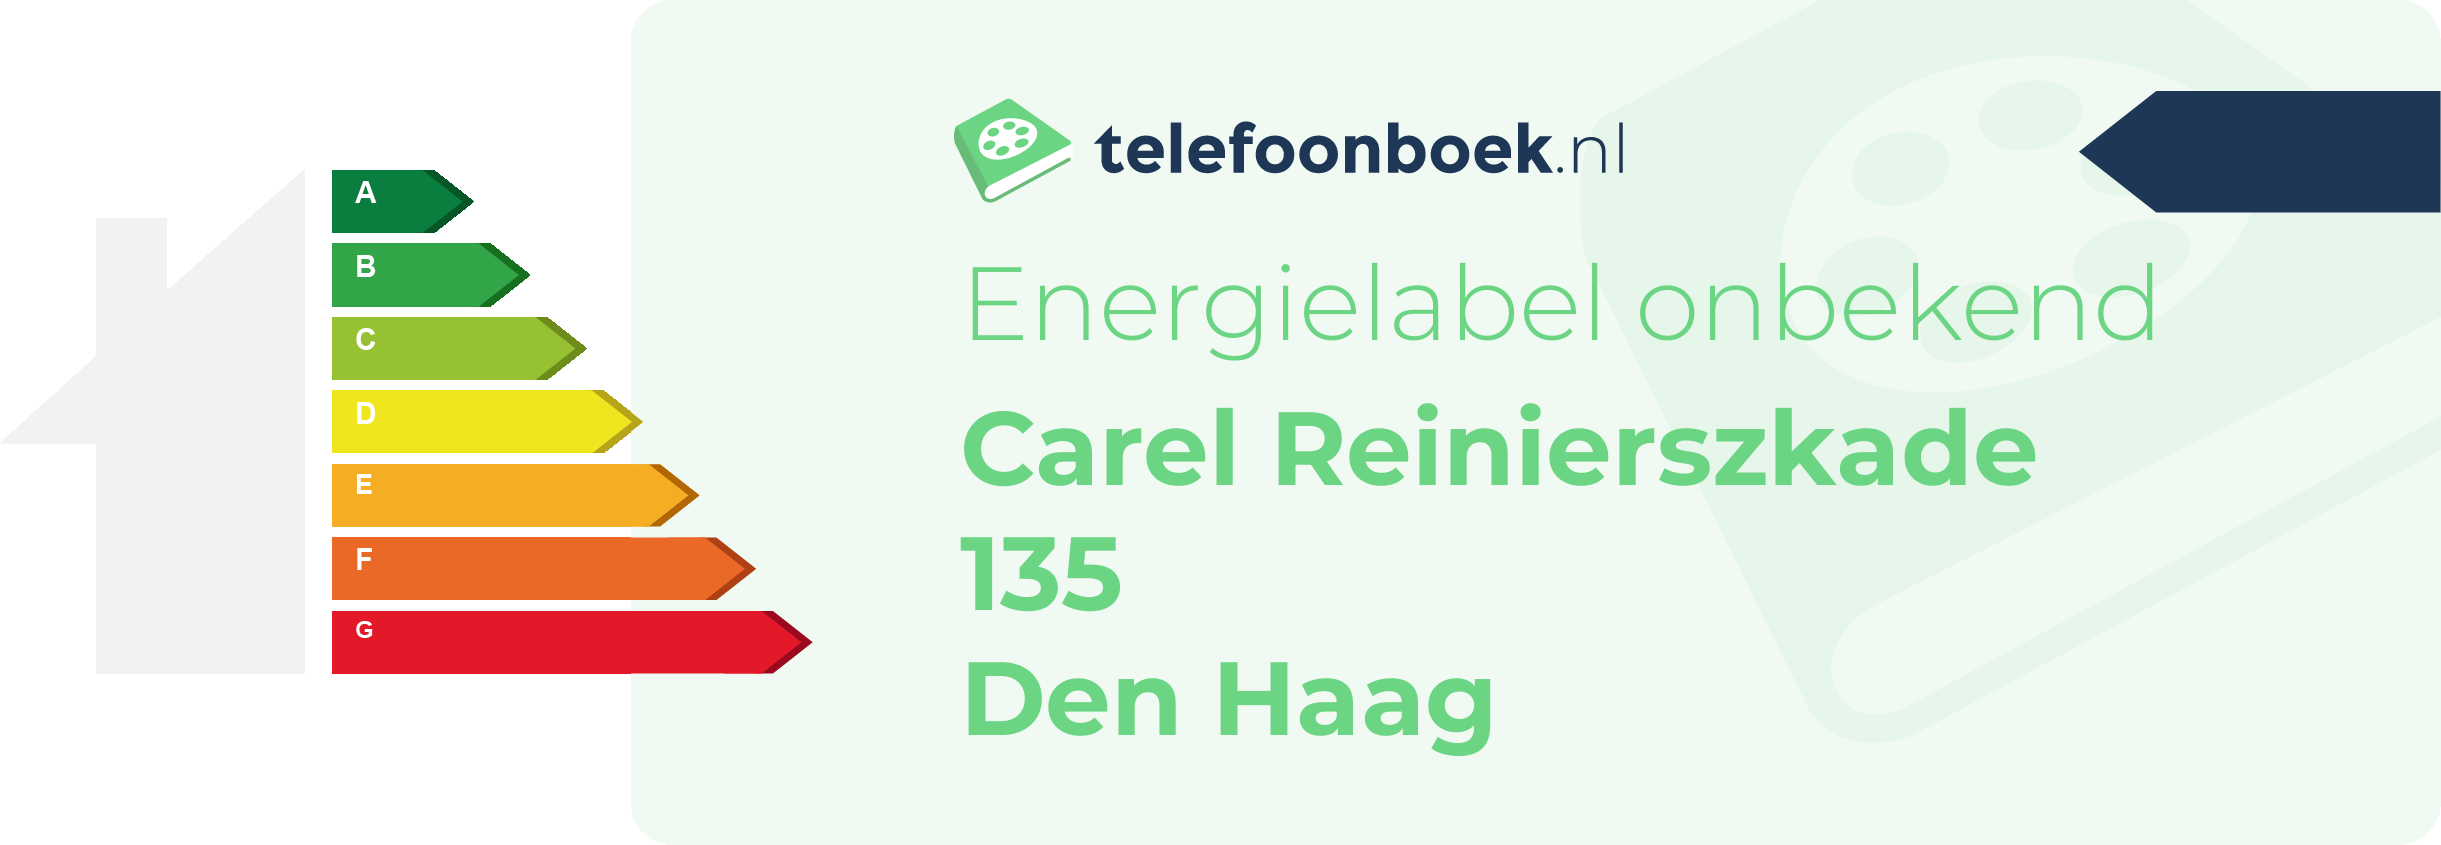 Energielabel Carel Reinierszkade 135 Den Haag